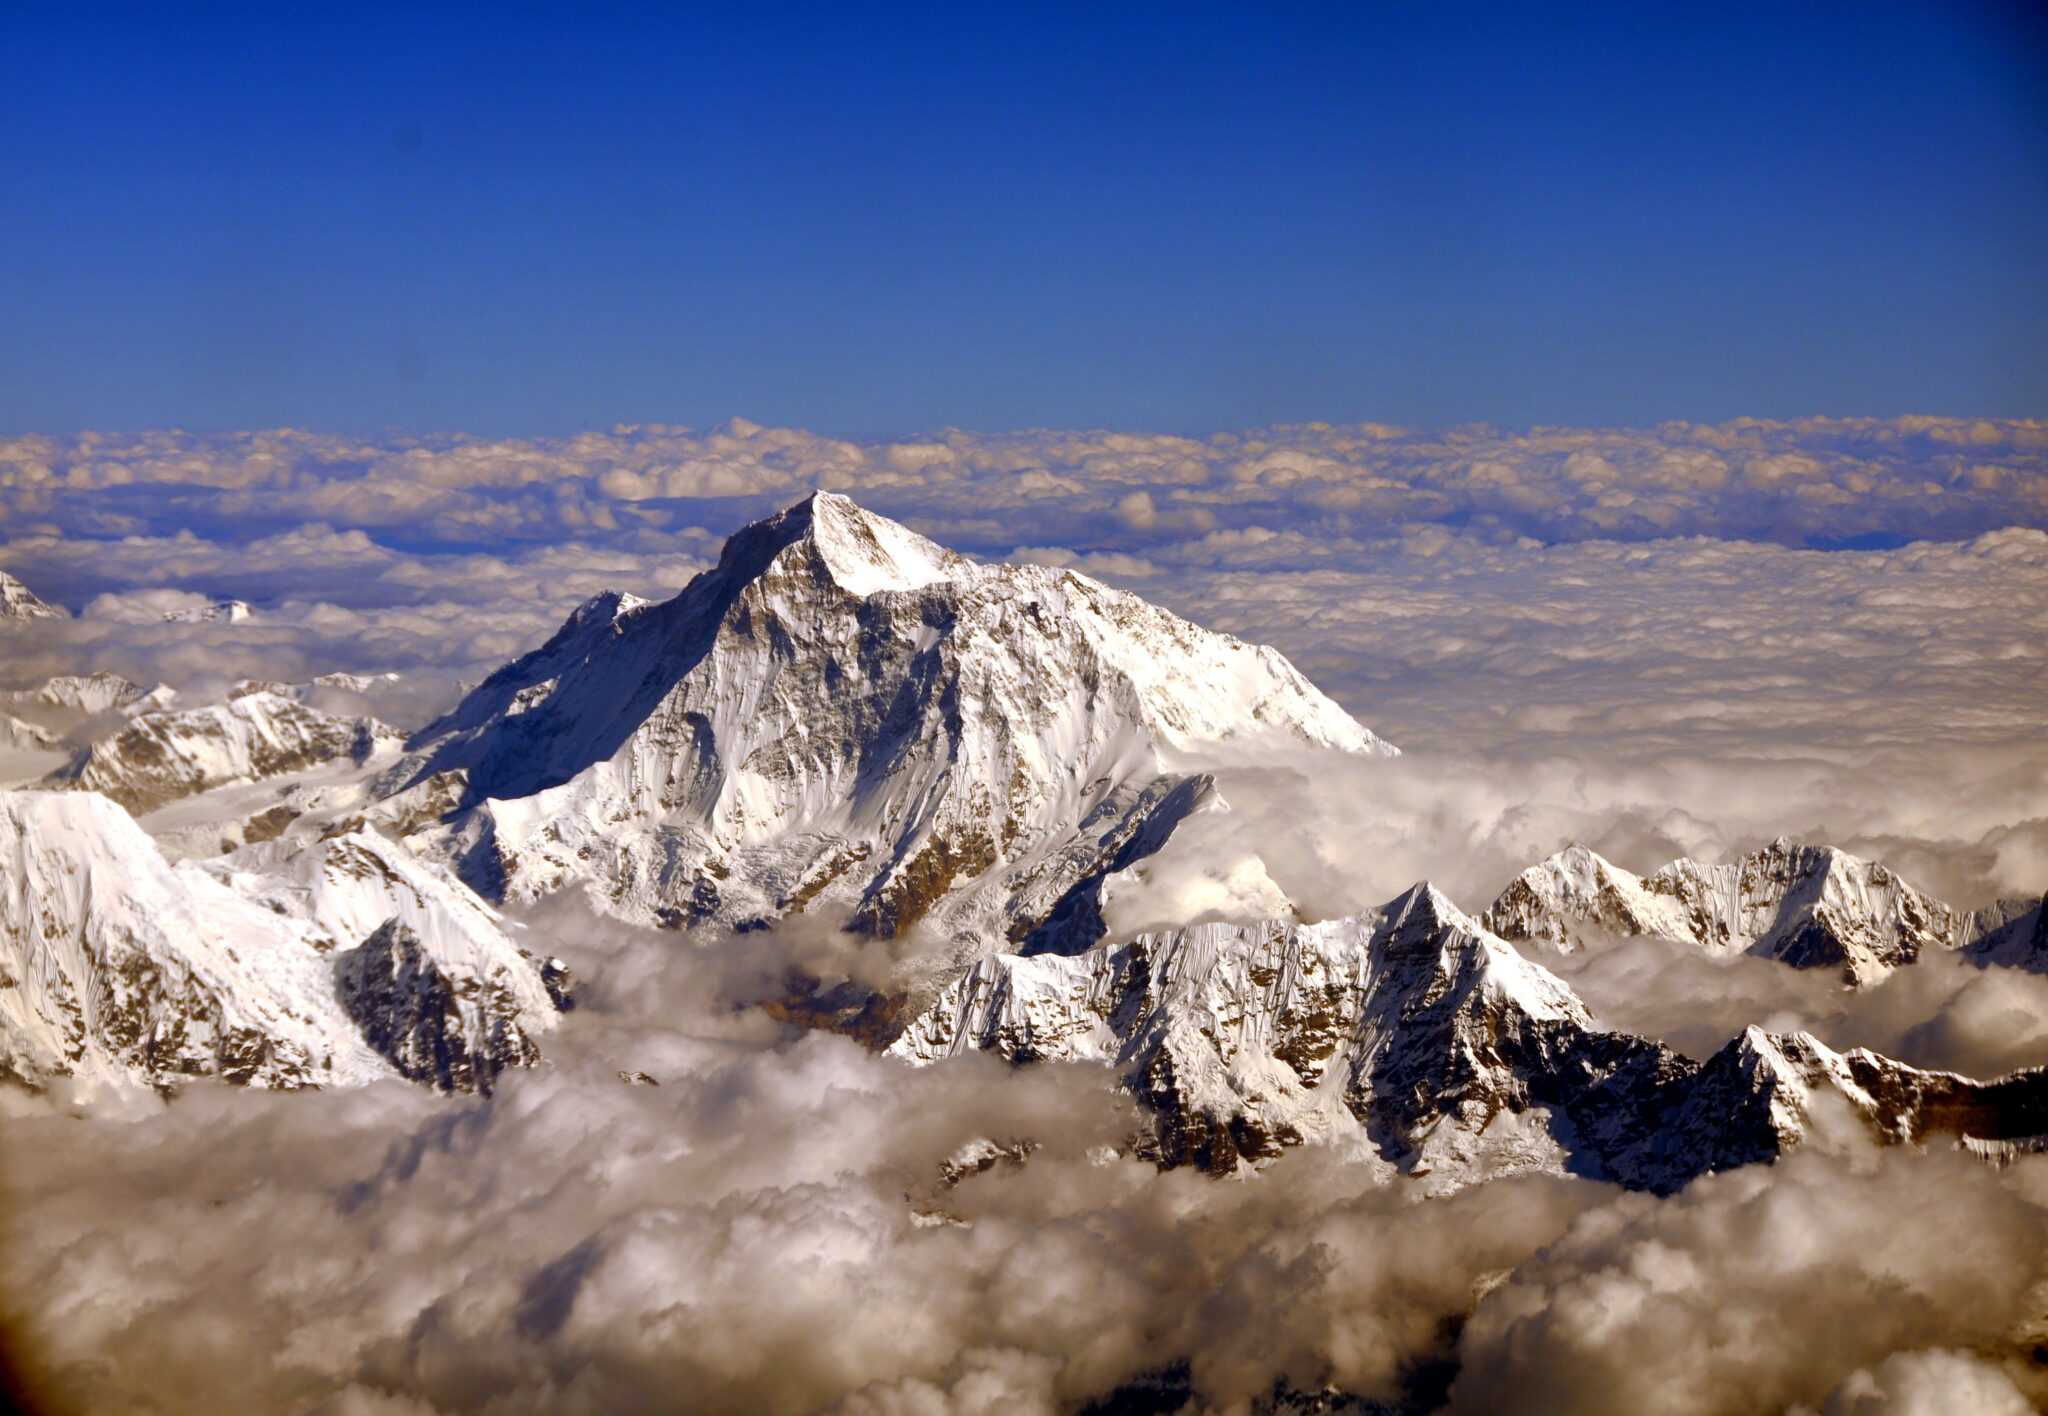 Гималаи море. Гималаи Эверест Джомолунгма. Гора Эверест (Джомолунгма). Гималаи. Макалу вершина. Макалу Гималаи Непал.